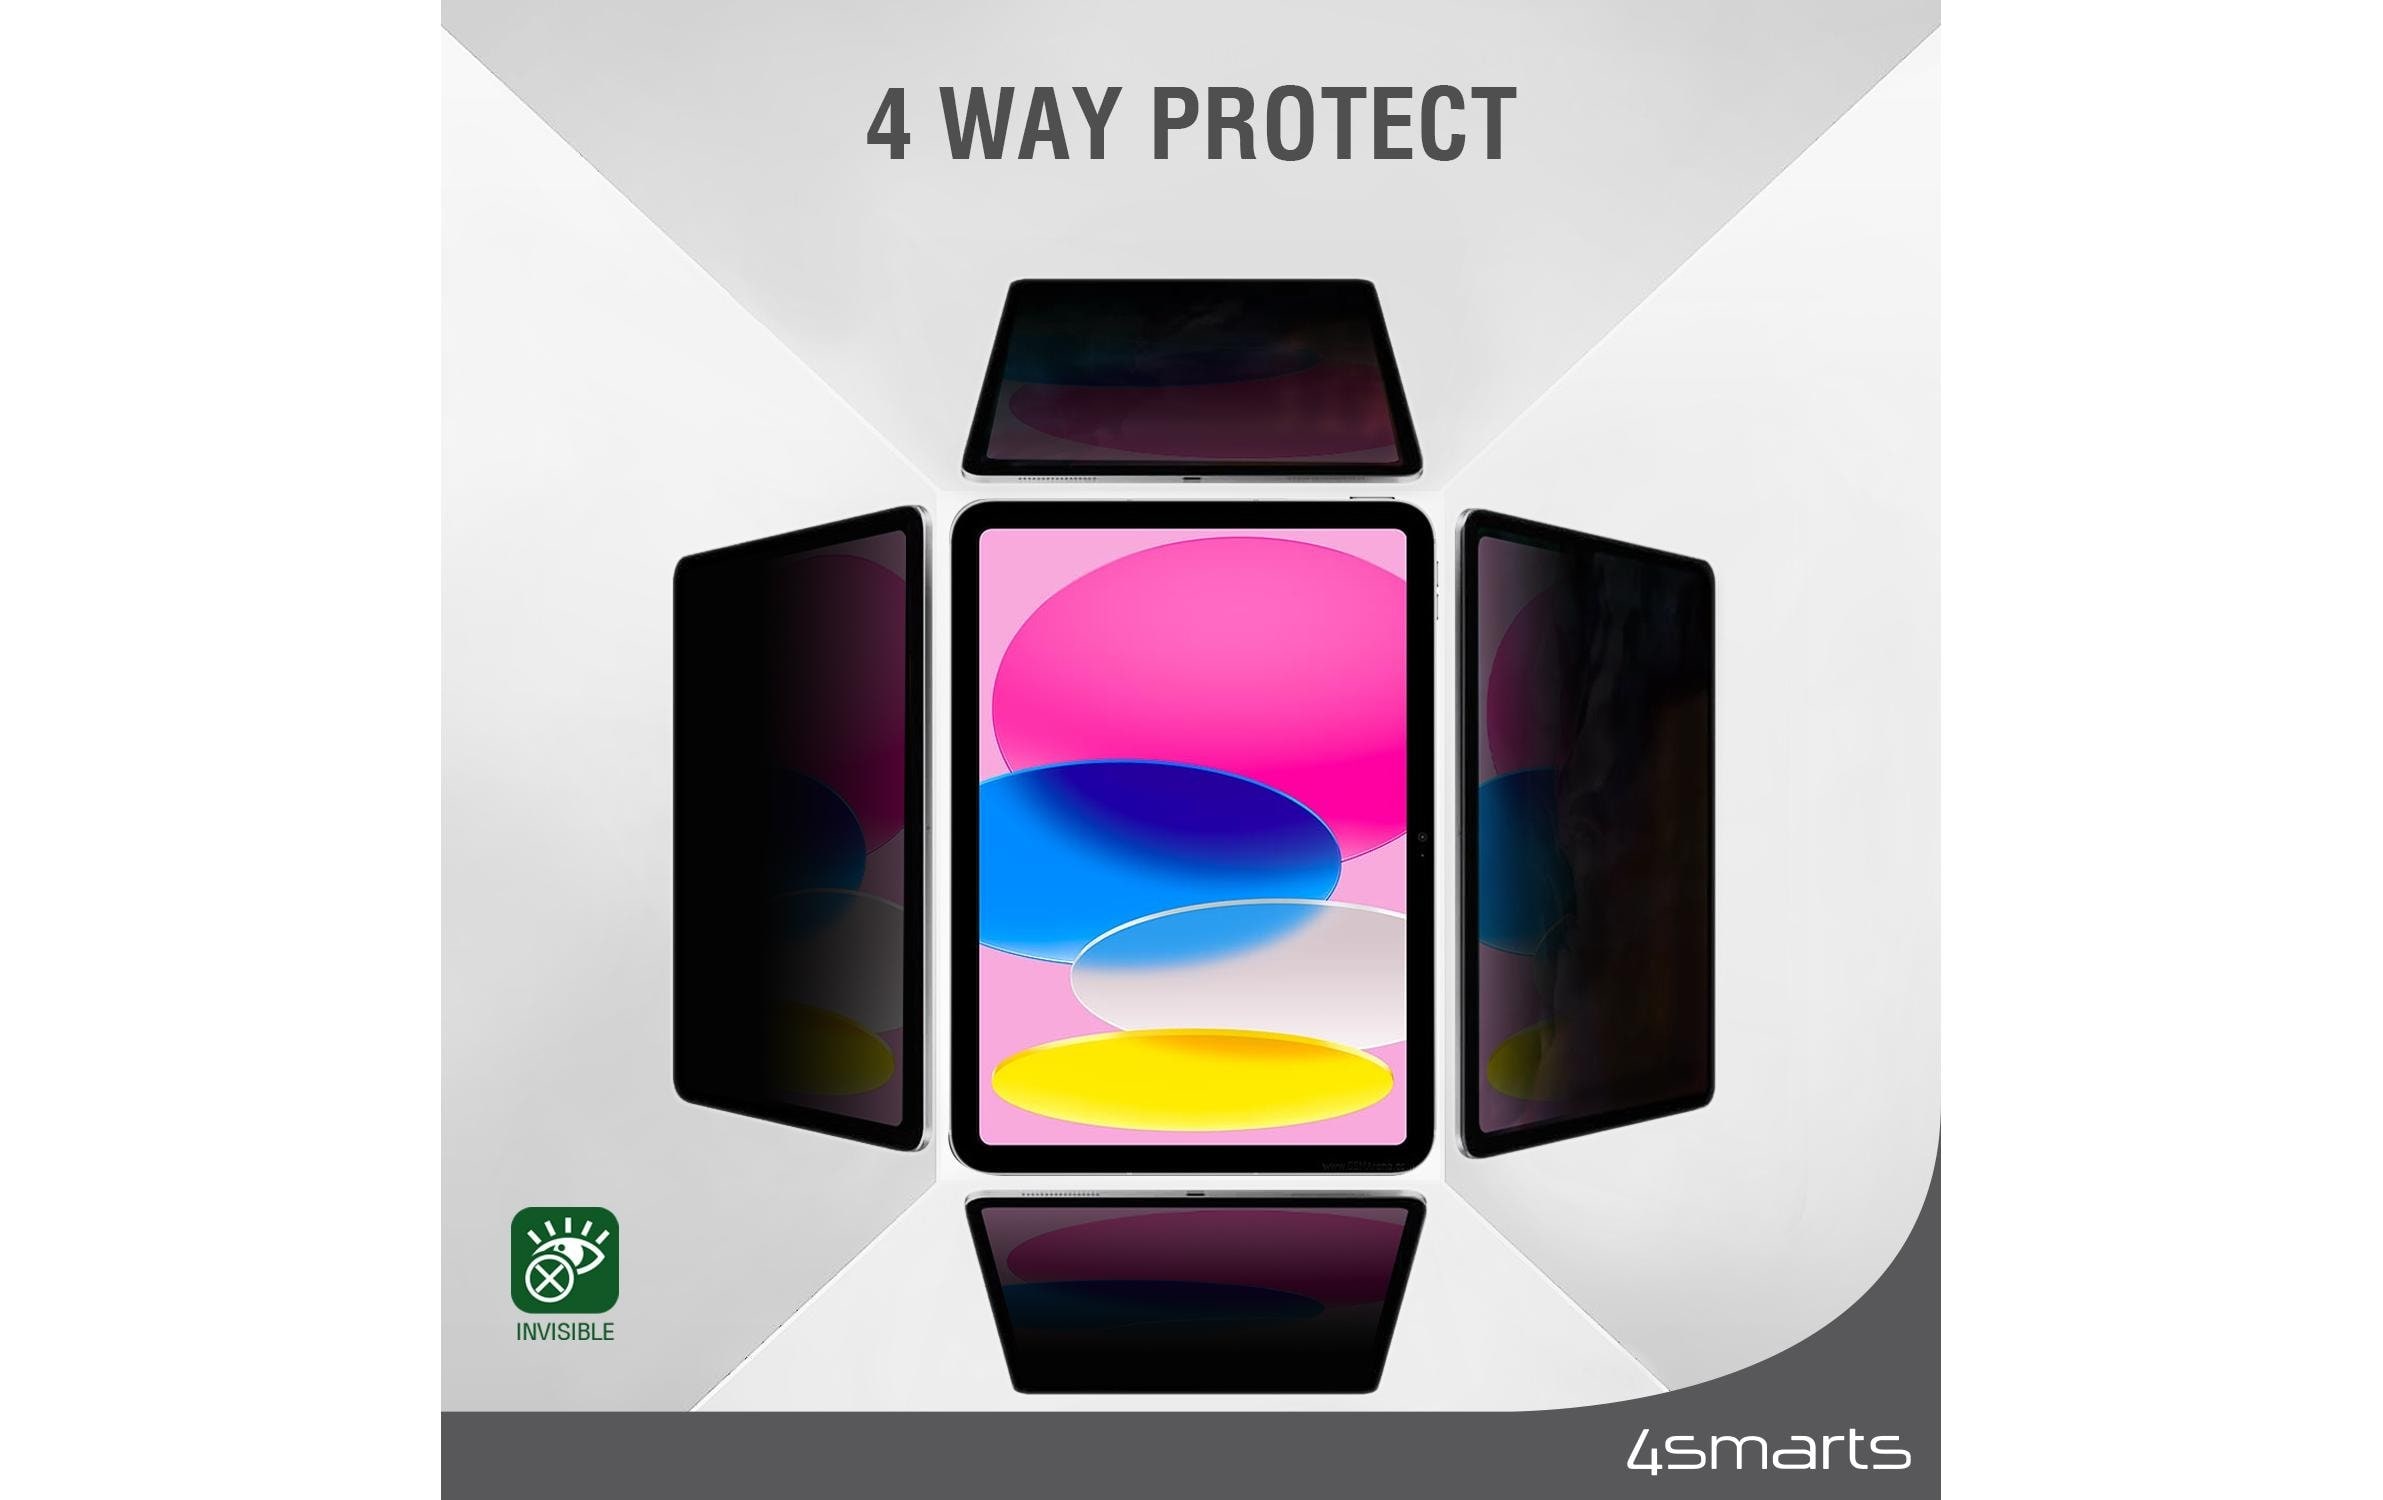 4smarts Schutzfolie »Privacy Filter für Apple iPad Pro 12,9«